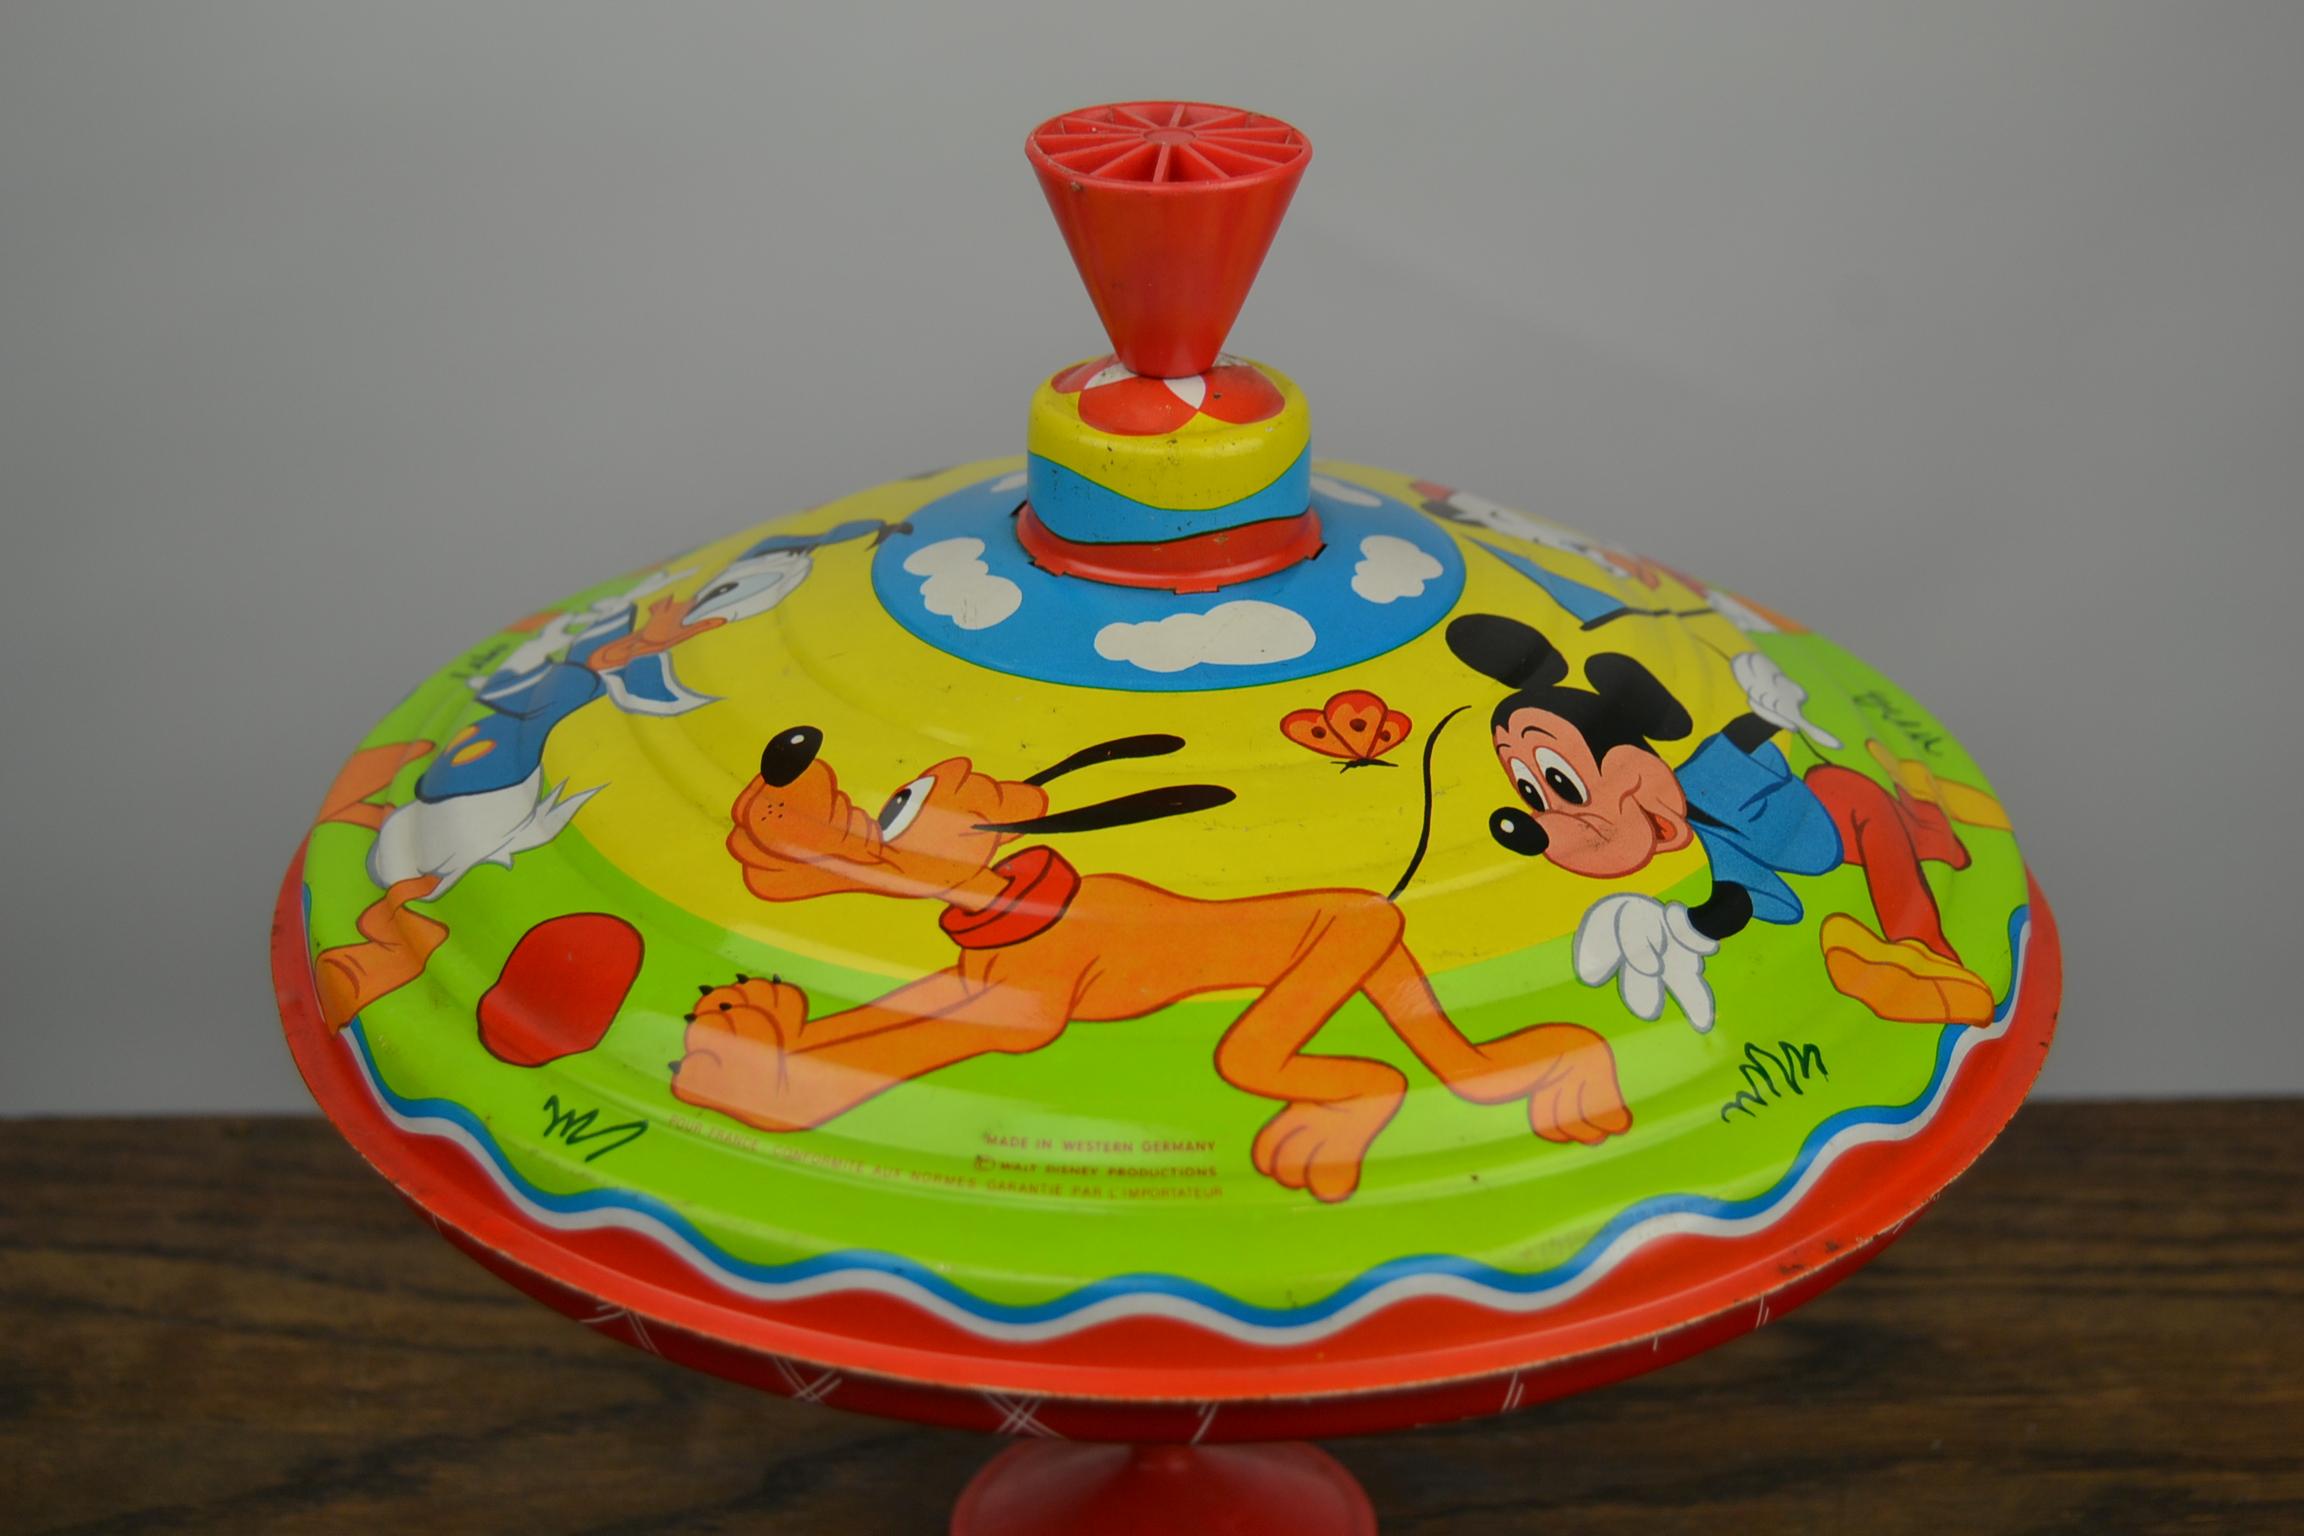 Zinn Spinning Top Spielzeug, Disney-Charakter  Von LBZ, Westdeutschland im Angebot 4